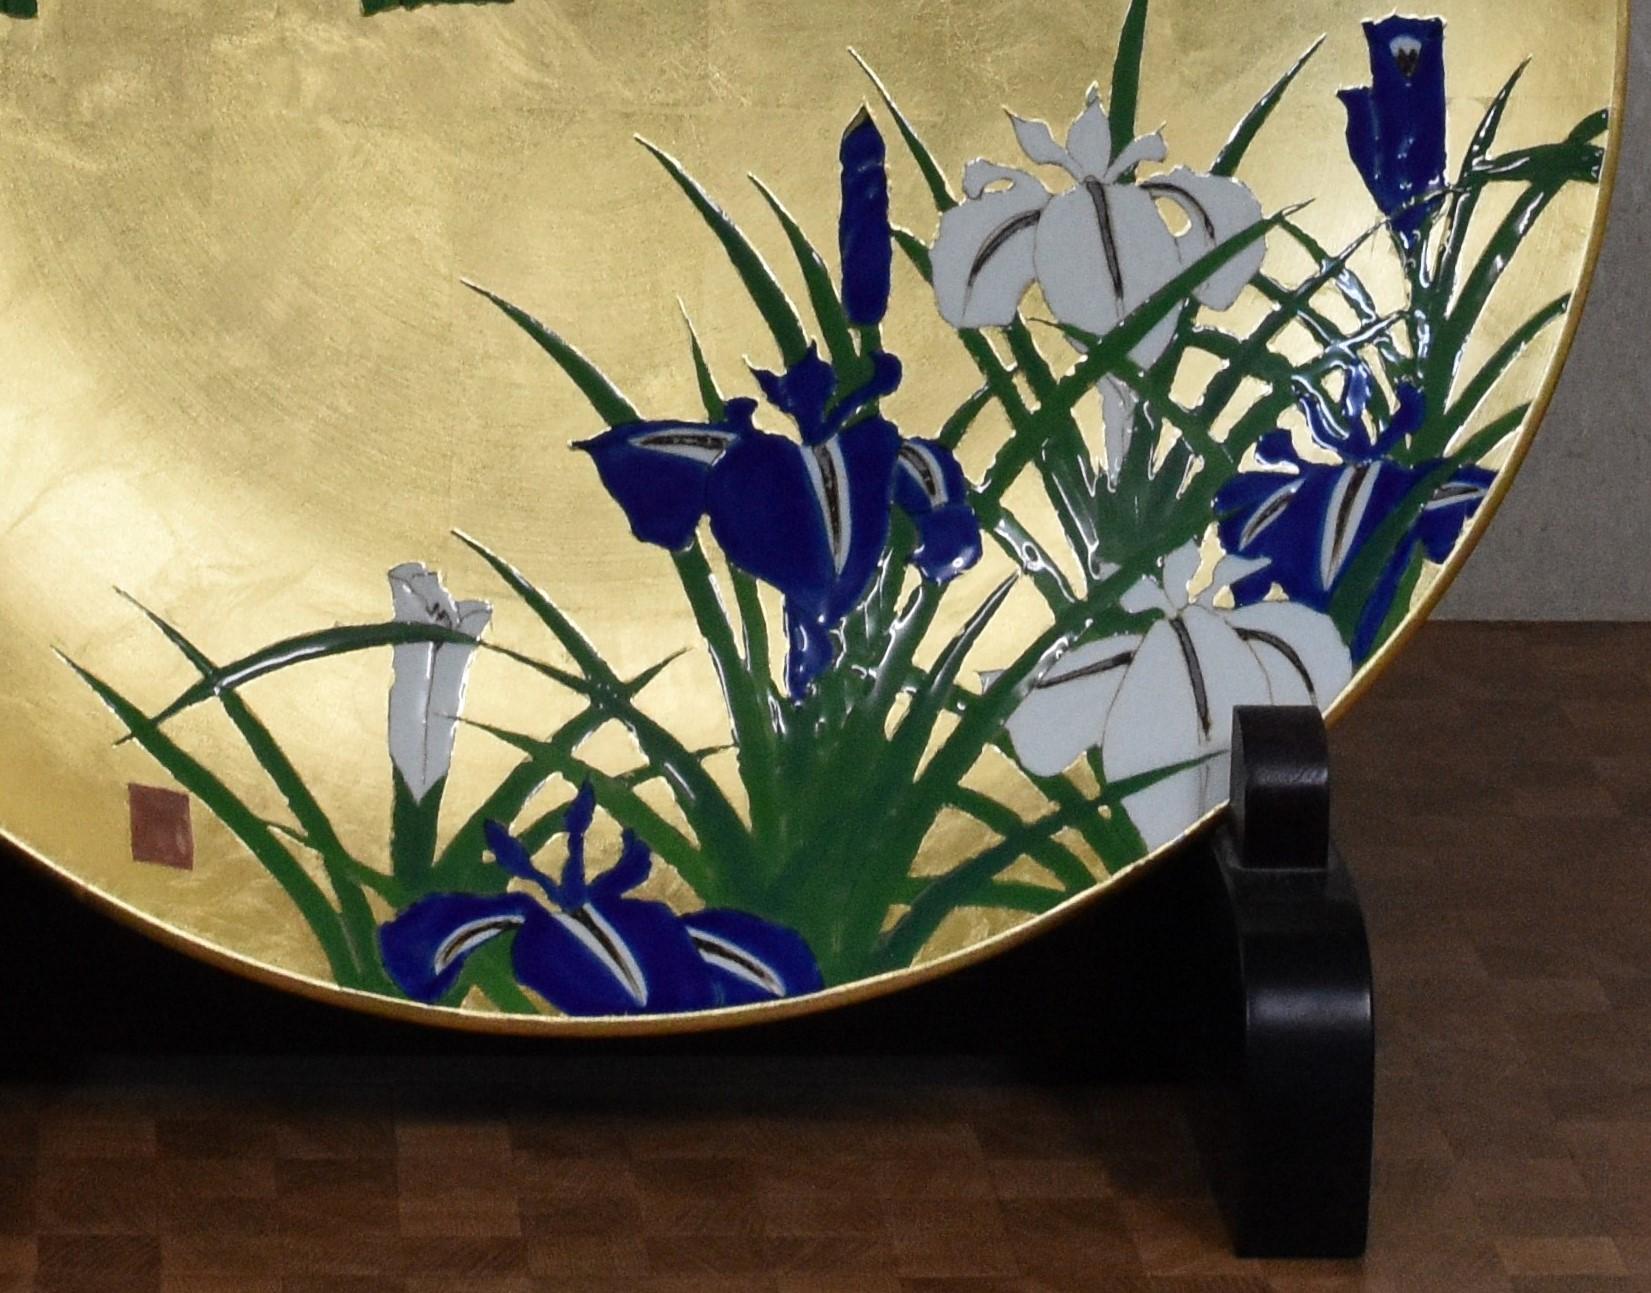 Extraordinaire chargeur en porcelaine décorative japonaise contemporaine de qualité muséale, peinte à la main de façon époustouflante d'un motif d'iris en violet/bleu vif, blanc et vert sur un magnifique fond de feuilles d'or. Il s'agit d'un